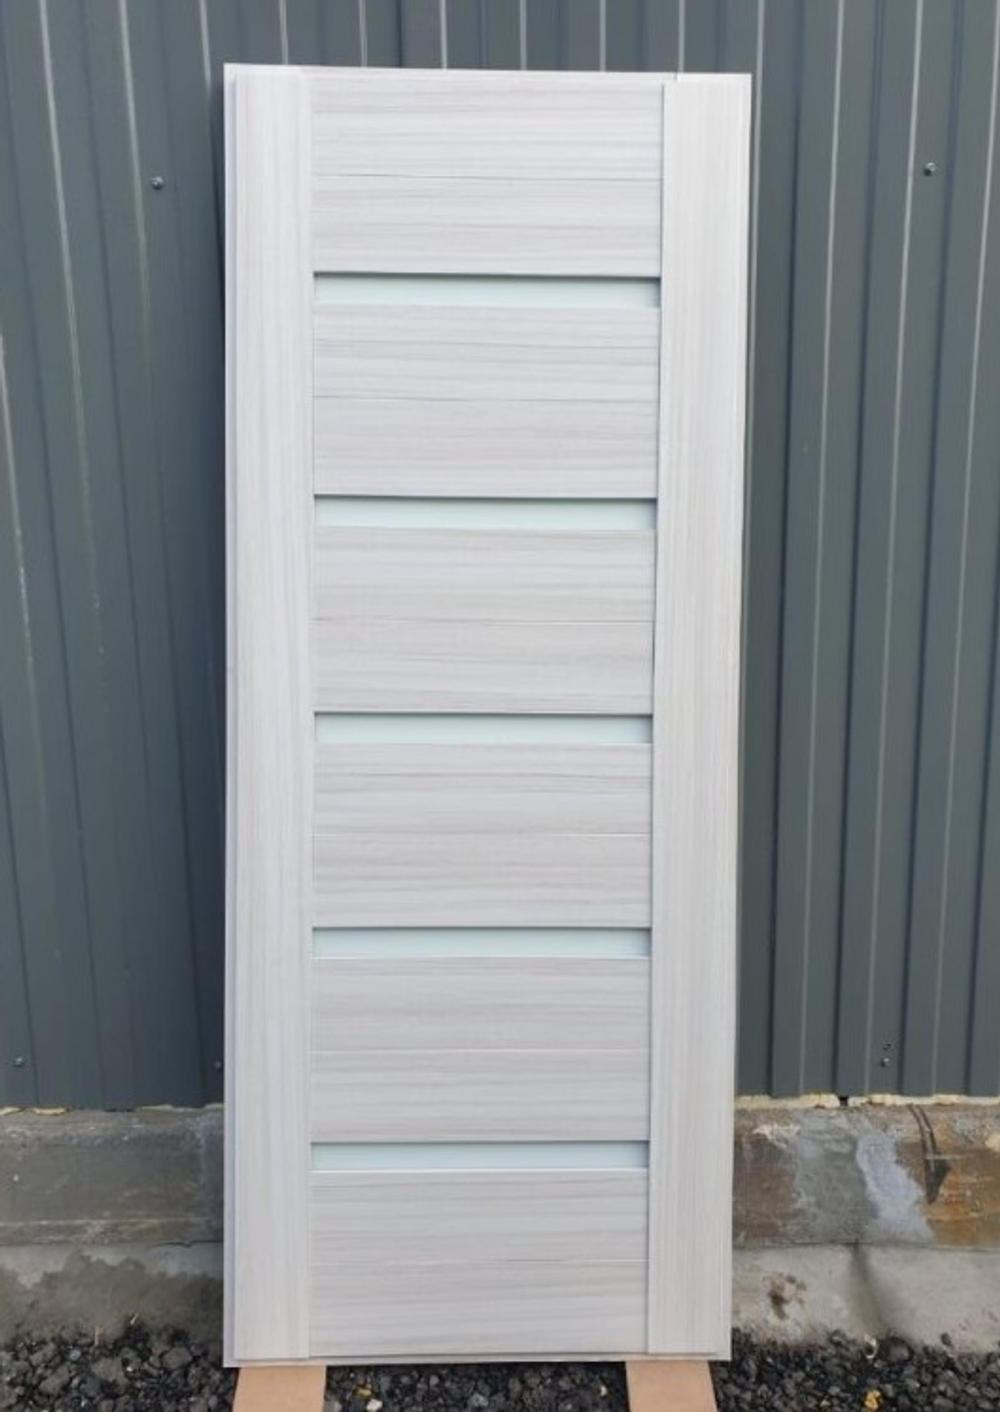 Входная металлическая дверь RеX (РЕКС) Премиум 3К Венге (Гладиатор)/ СБ-14 лиственница бежевая, стекла белые